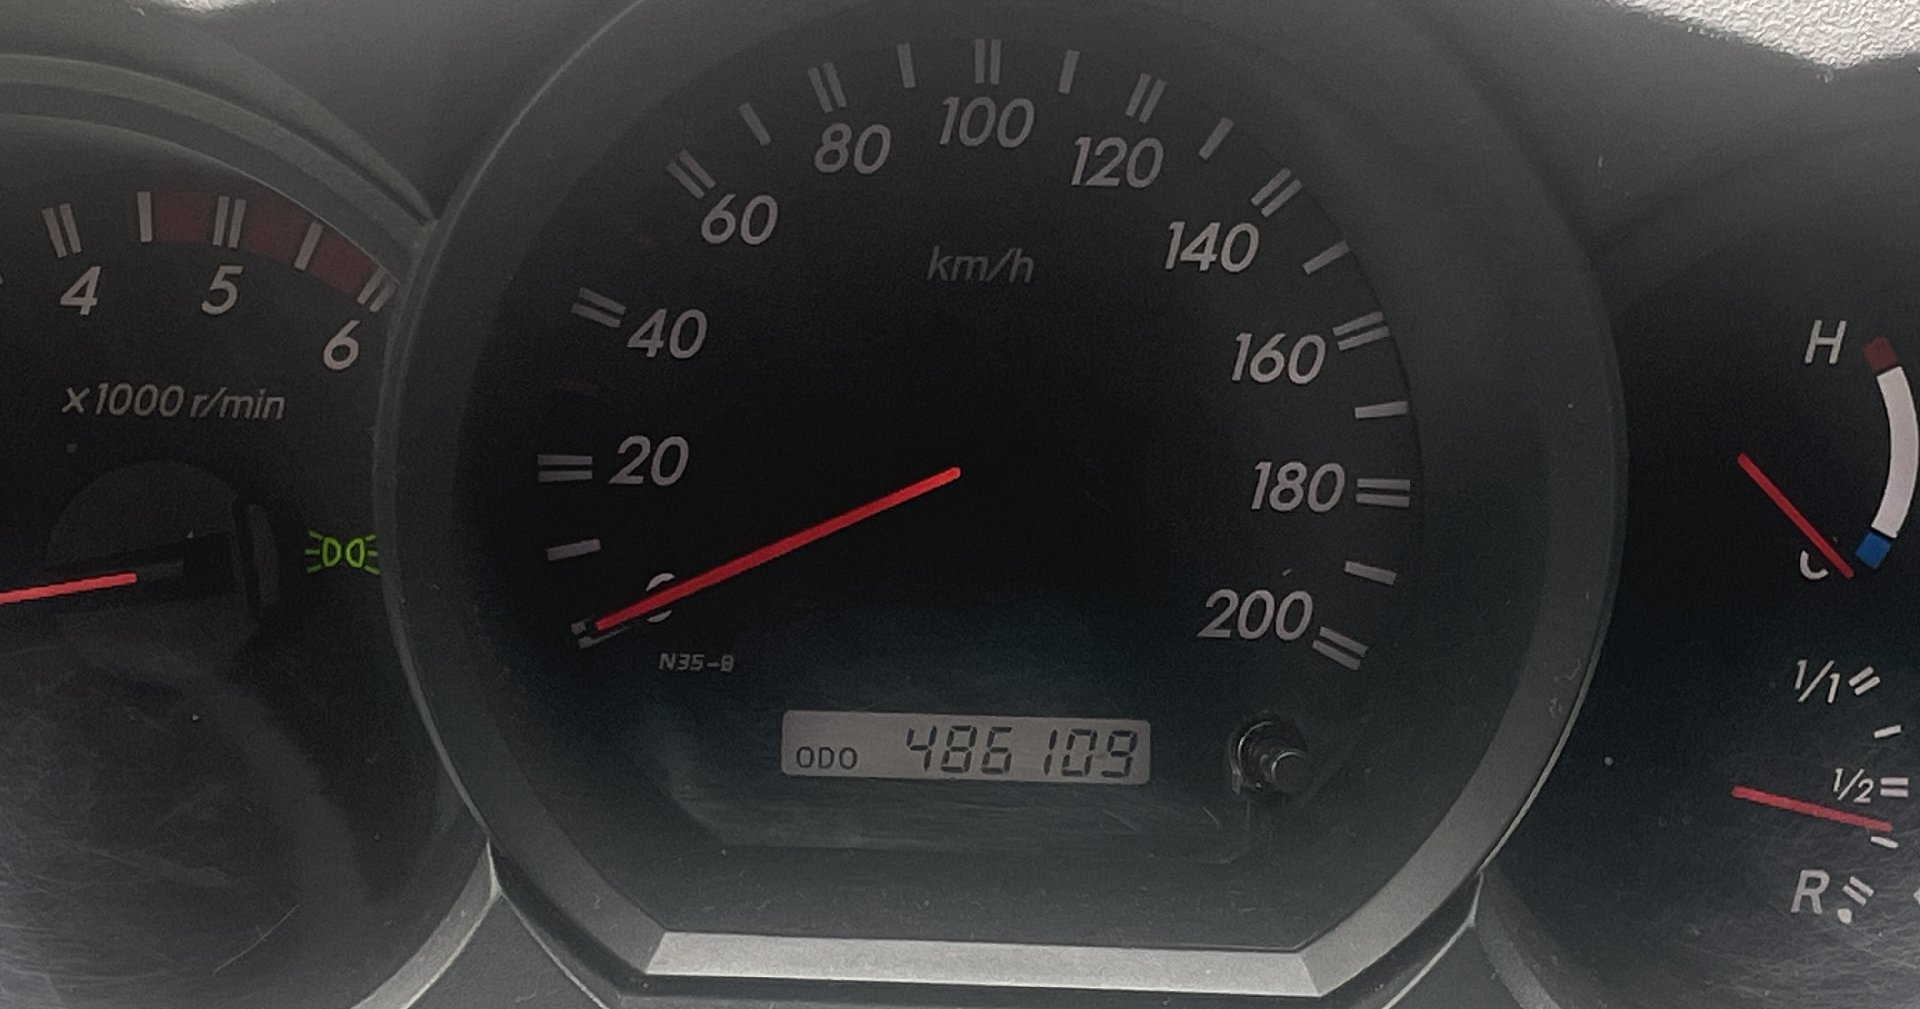 Klub Rekordowych Przebiegów zaprasza posiadaczy Toyot z przelotem powyżej 200 000 km 